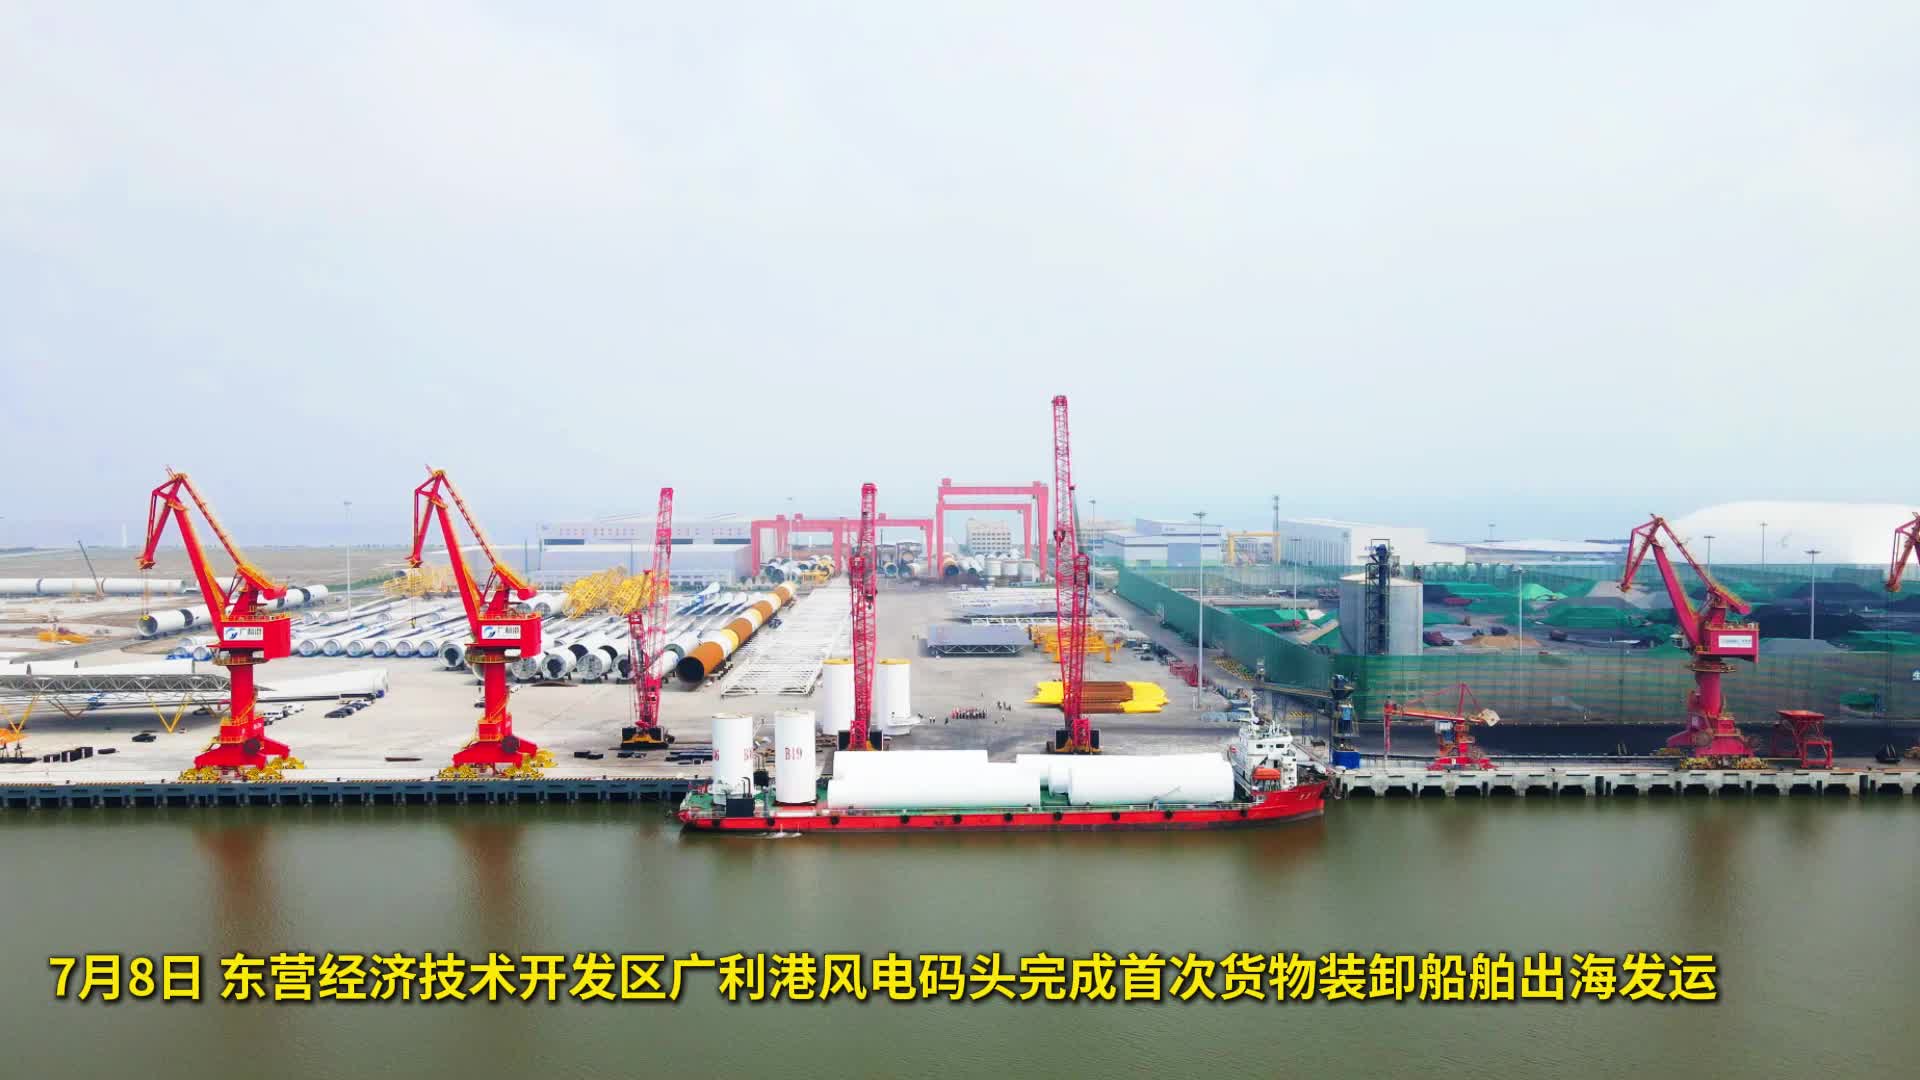 首船出海!山东省首个风电设备大型专用码头首船发运